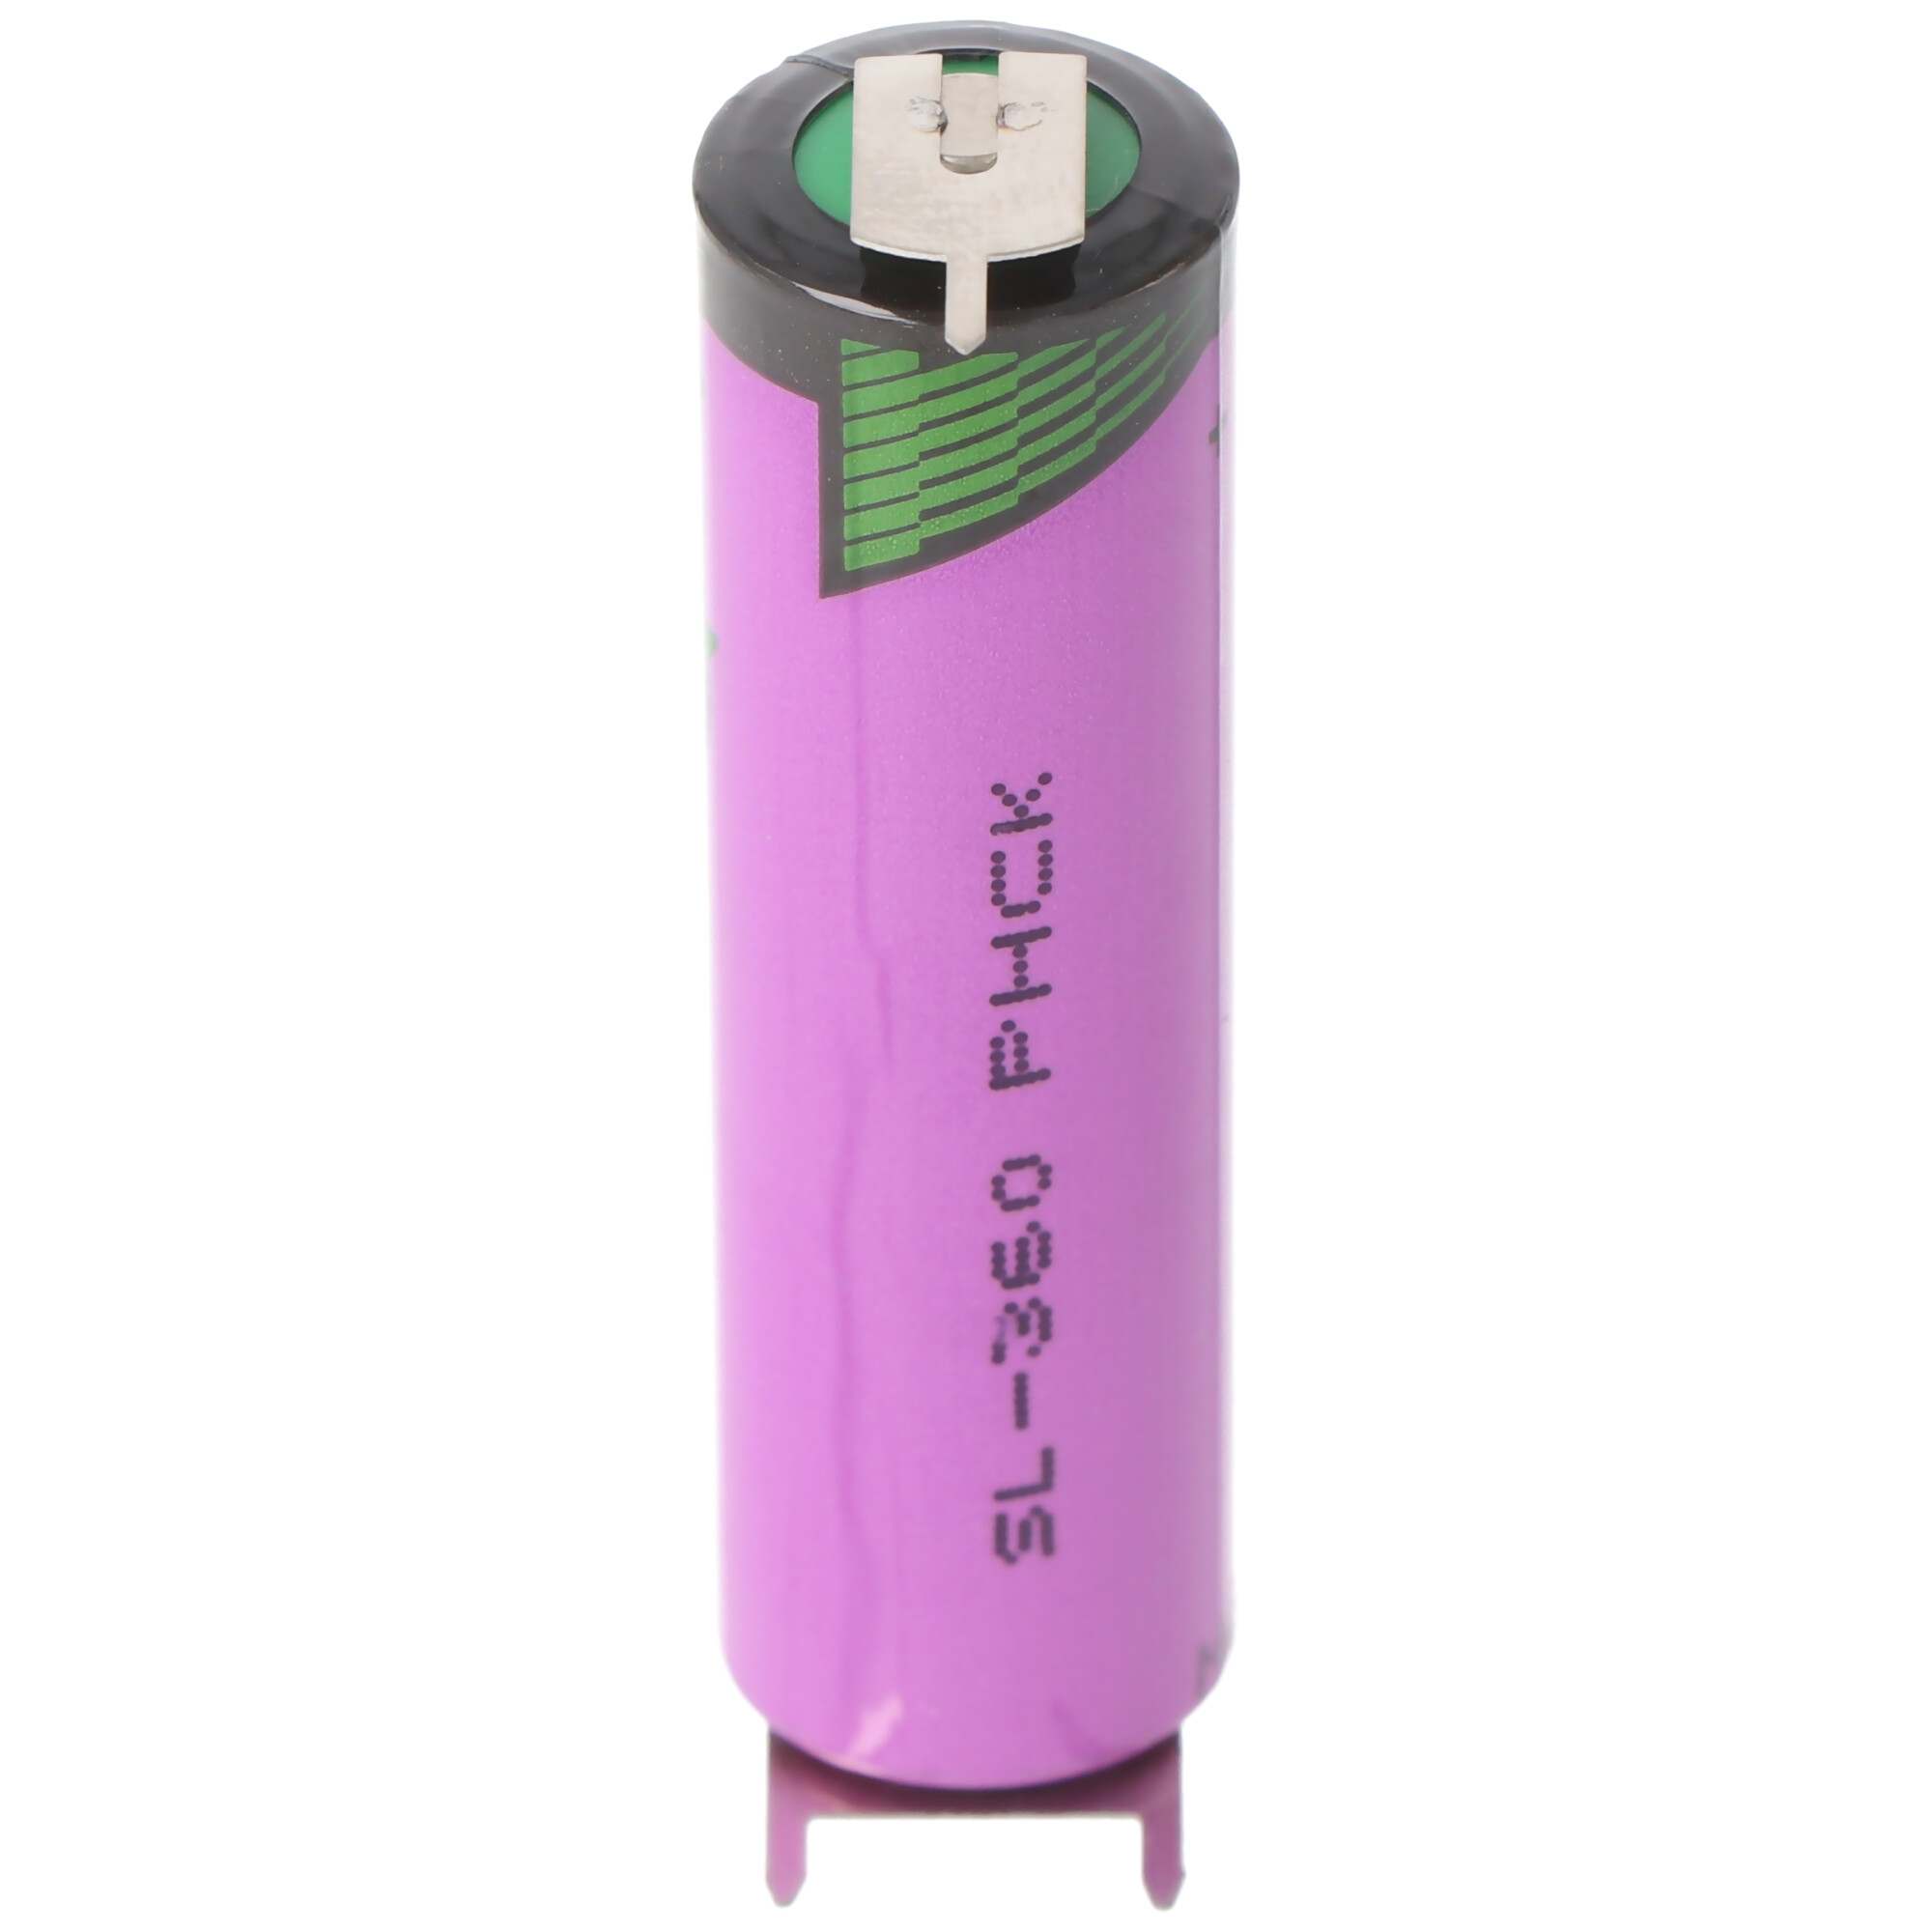 Tadiran Lithium Batterie SL-360/PT mit Lötfahnen mit 3er Print Kontakten